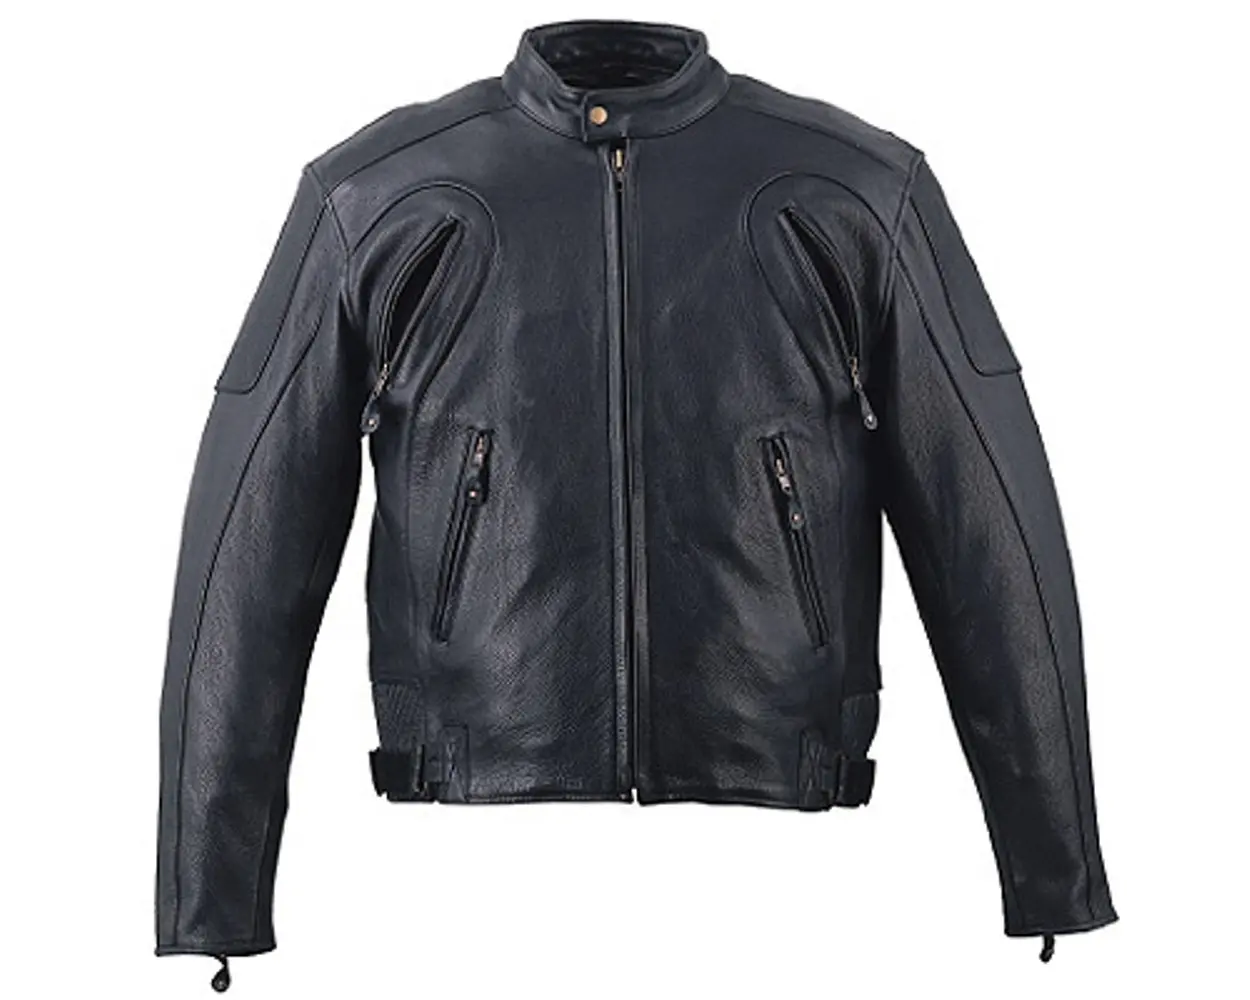 HMB-0521A jaket kulit pria, mantel pengendara sepeda motor ventilasi